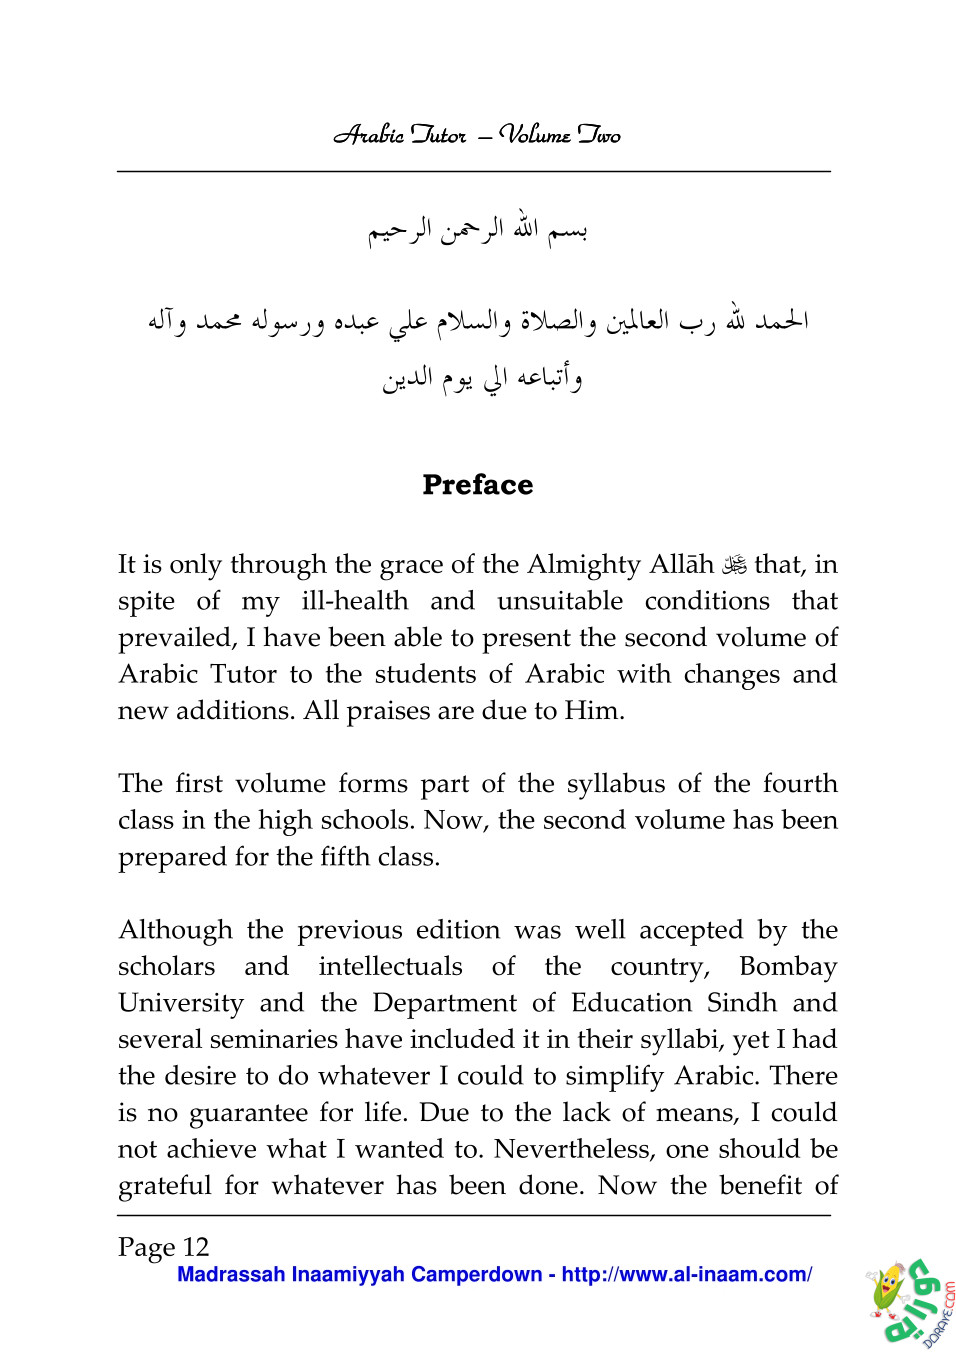 Arabic Tutor Volume Two 012 - Arabic Tutor Volume-Two 2